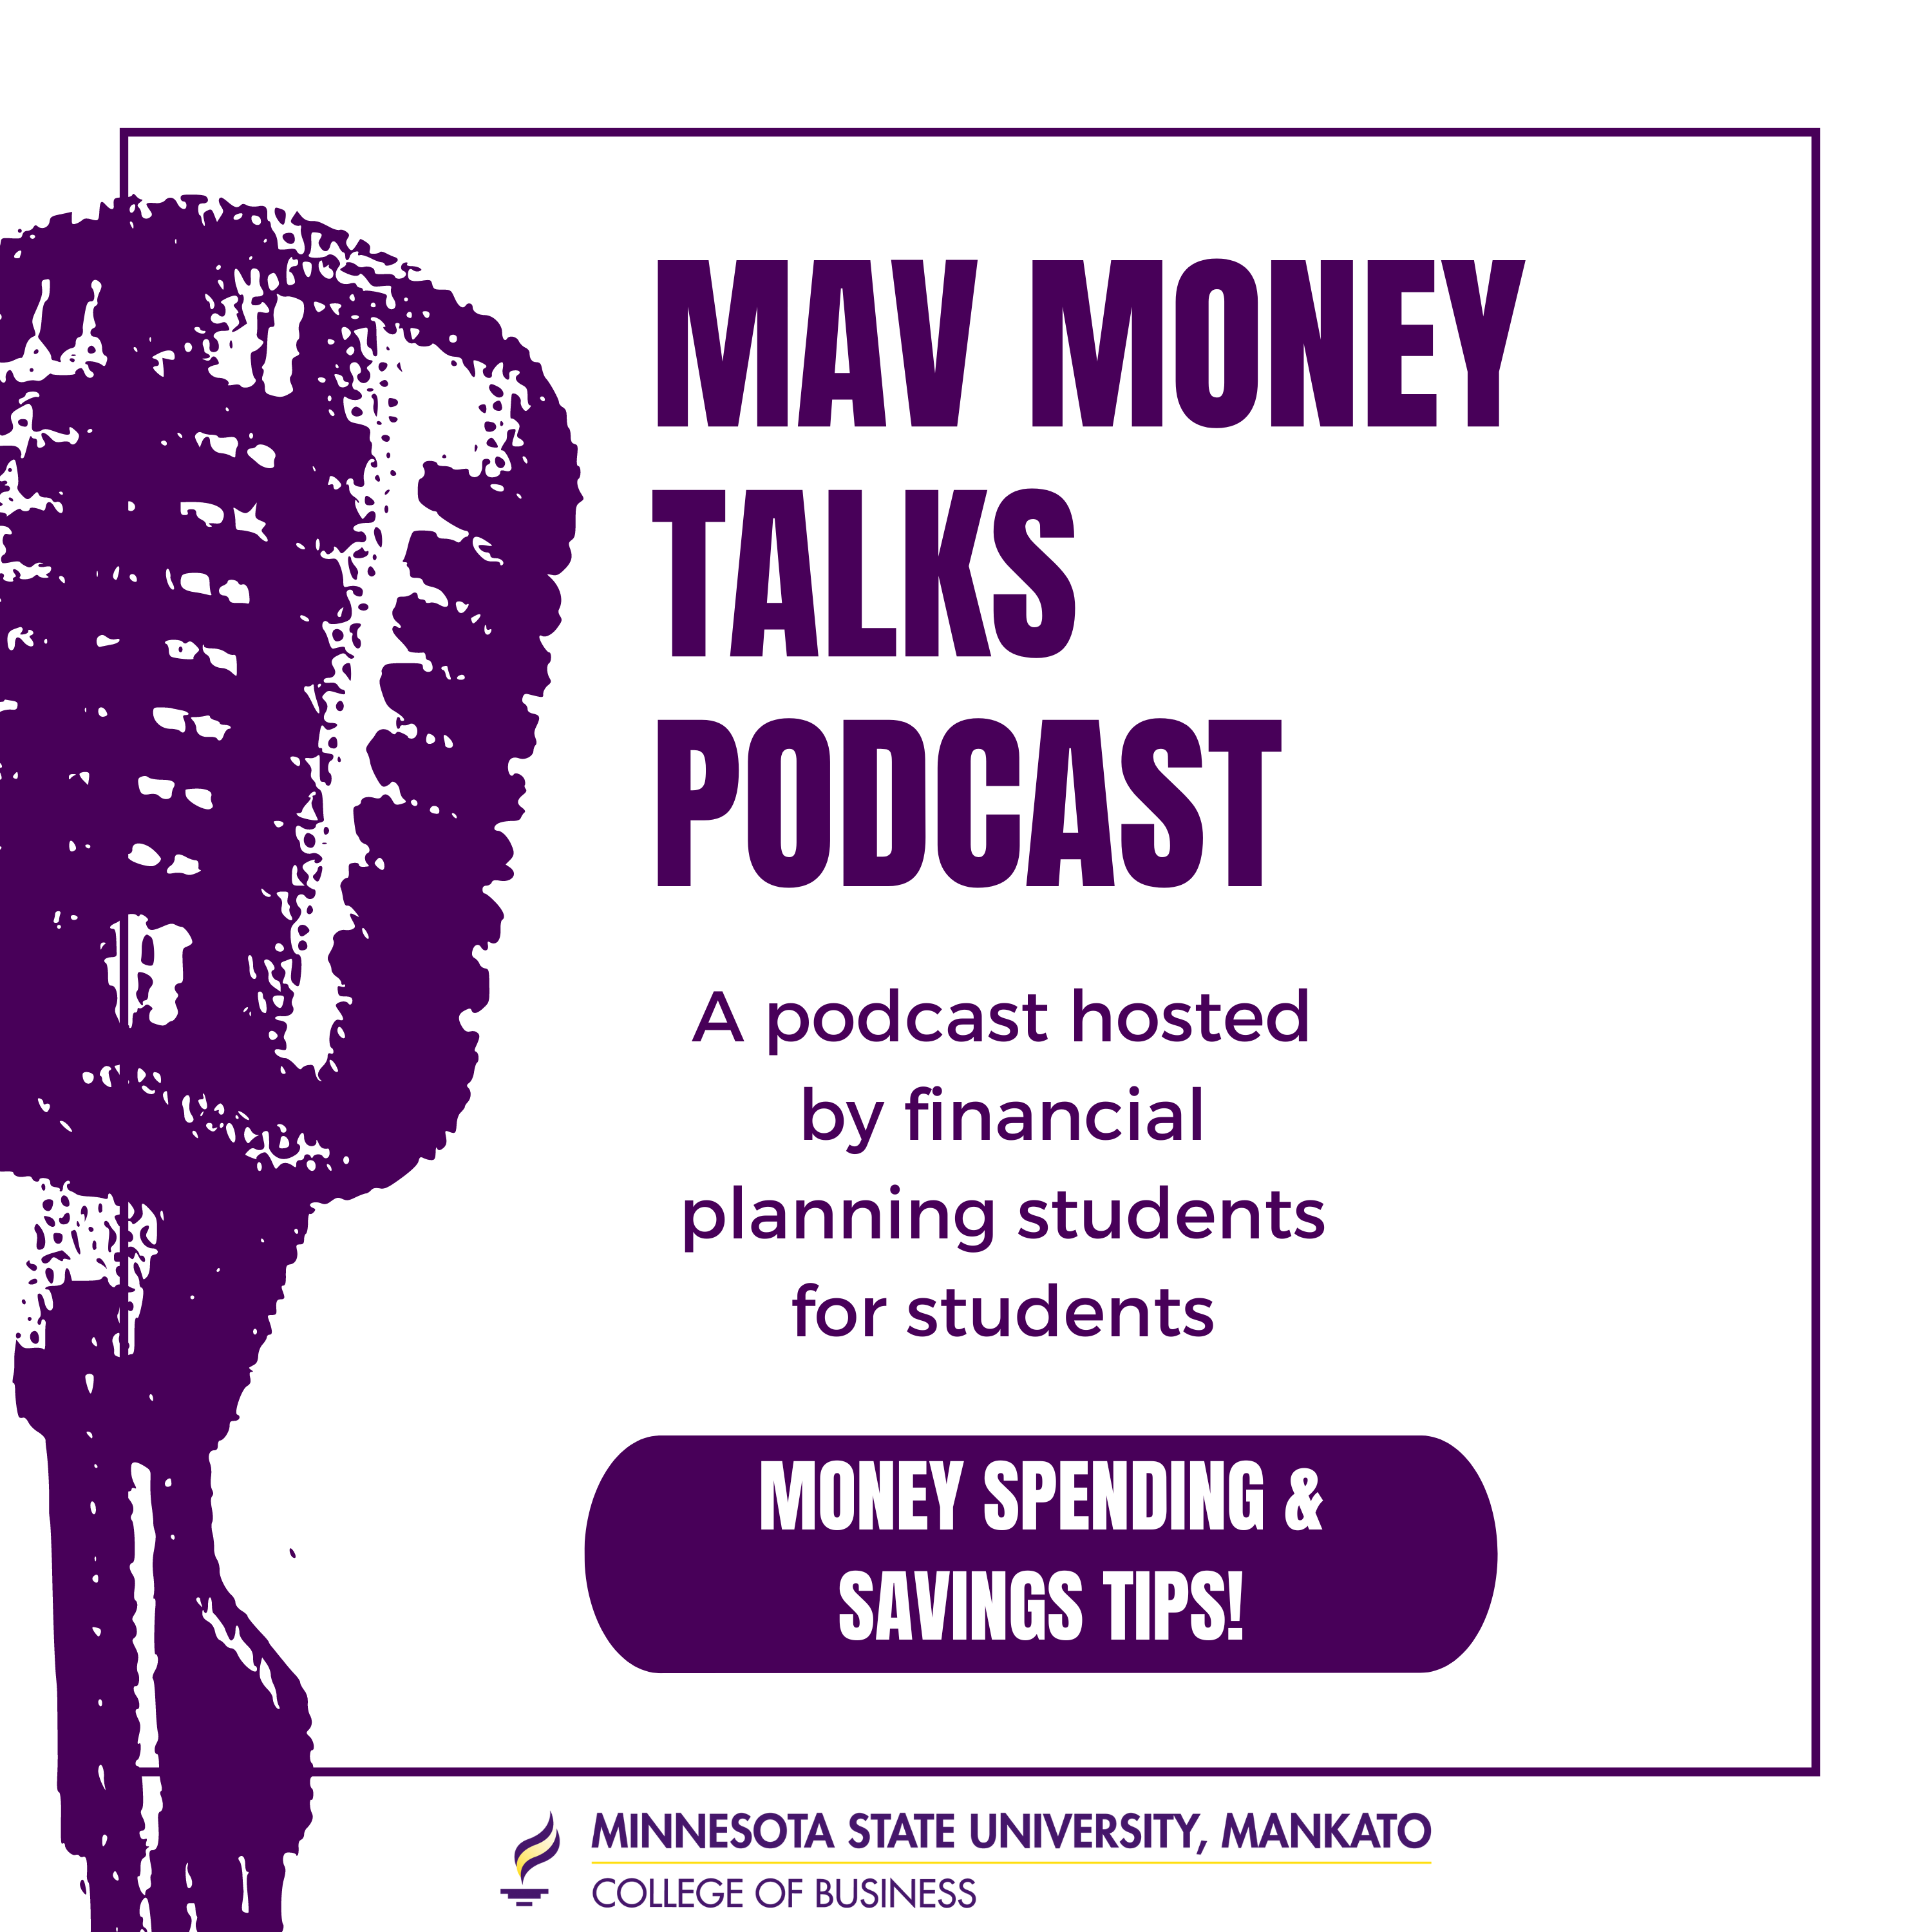 MAv Money talk podcast-title slide.png